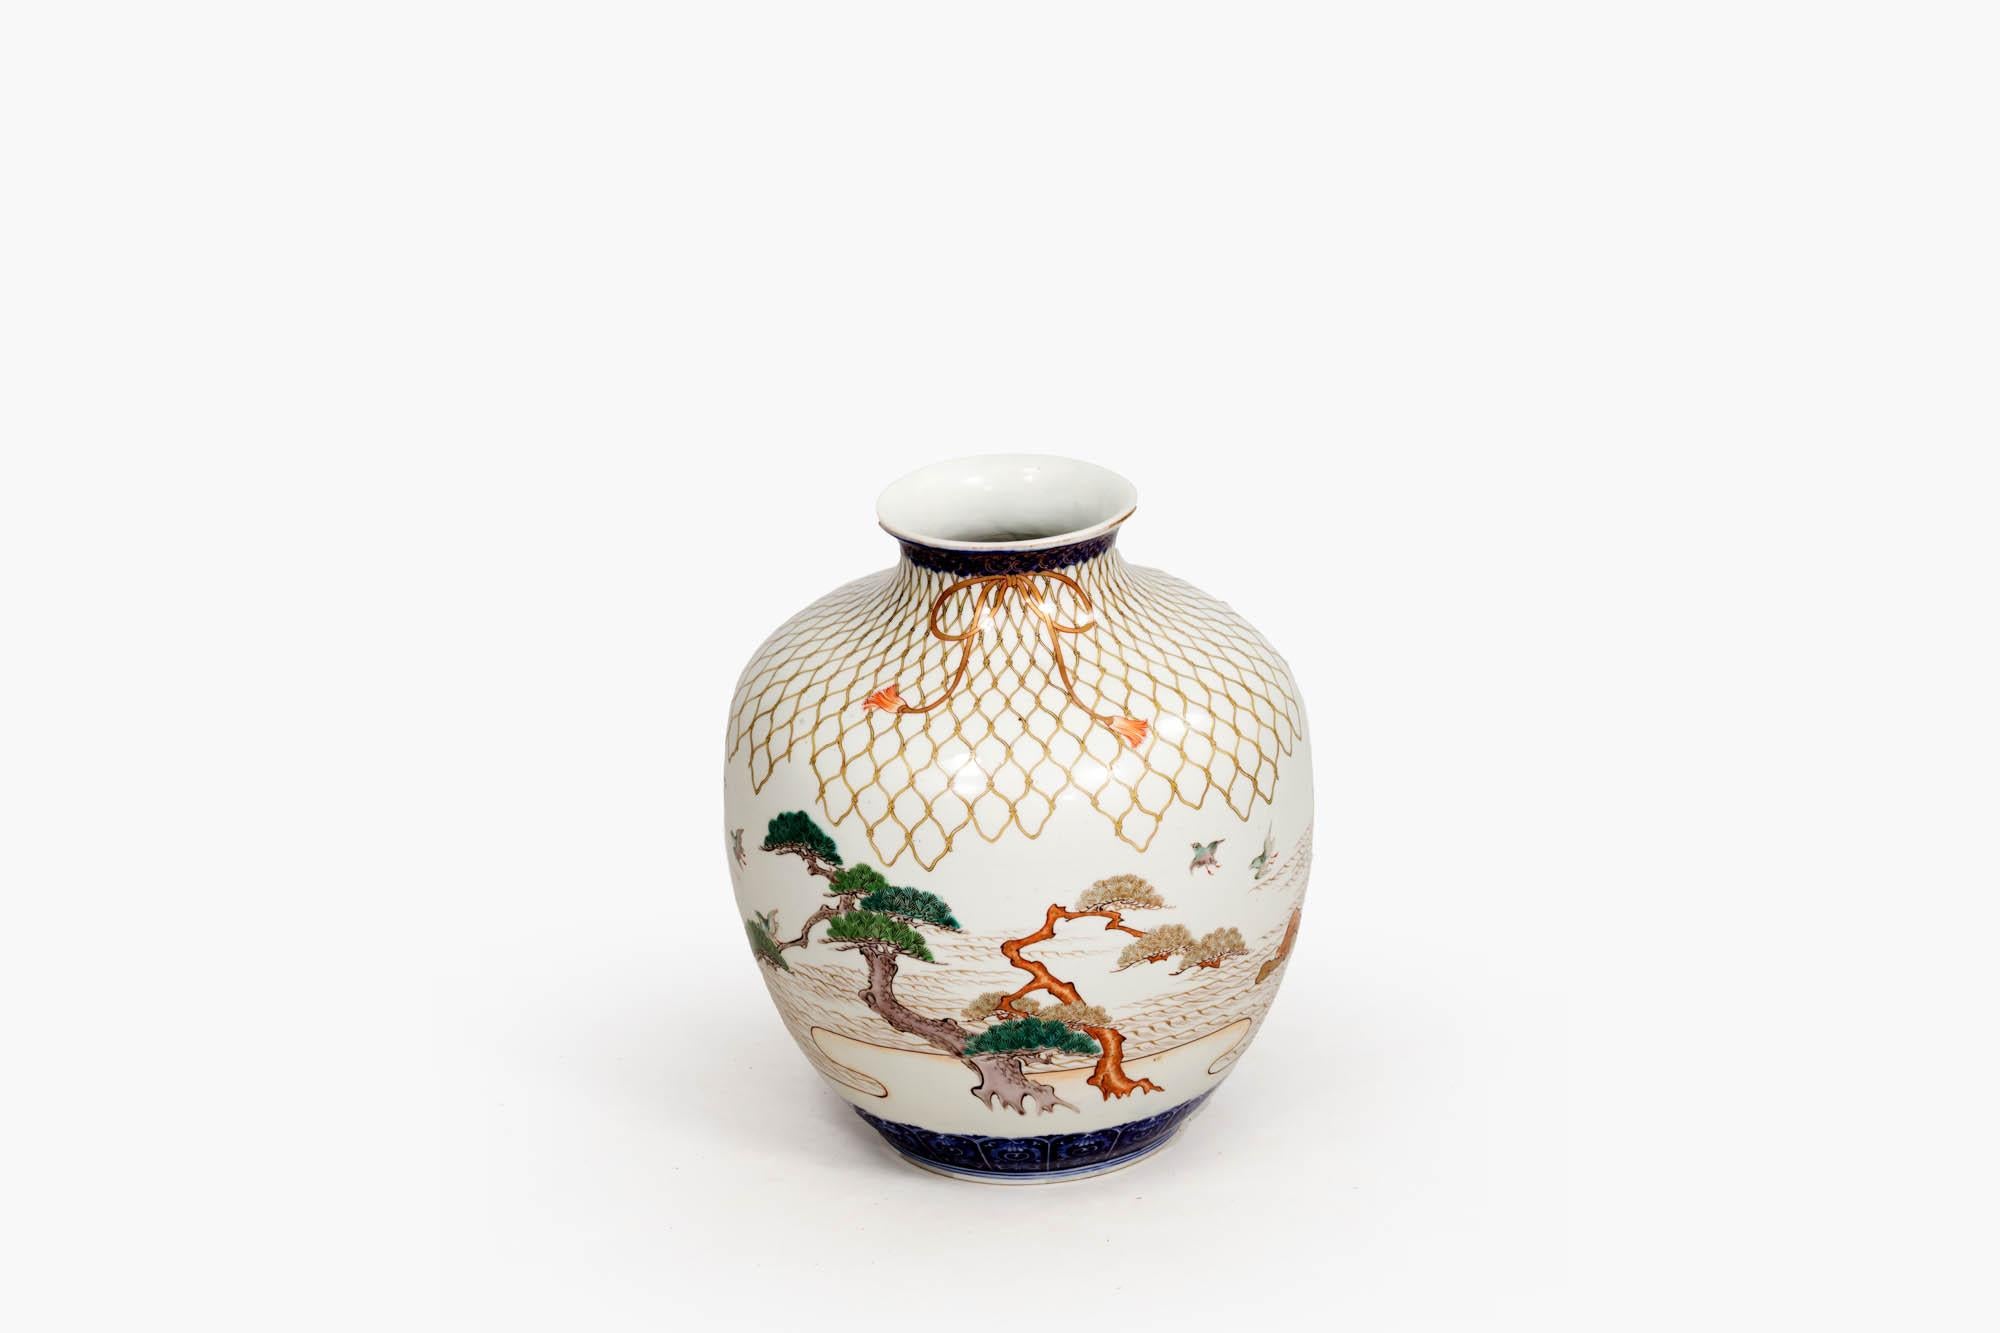 Chinesische Keramikvase des späten 19. Jahrhunderts im japanischen Stil, bauchige Form mit gemalten naturalistischen Details wie Bäumen, Wasser und Vögeln. Der Hals und der untere Teil des Sockels sind mit einer kräftigen, tiefblauen Borte versehen,